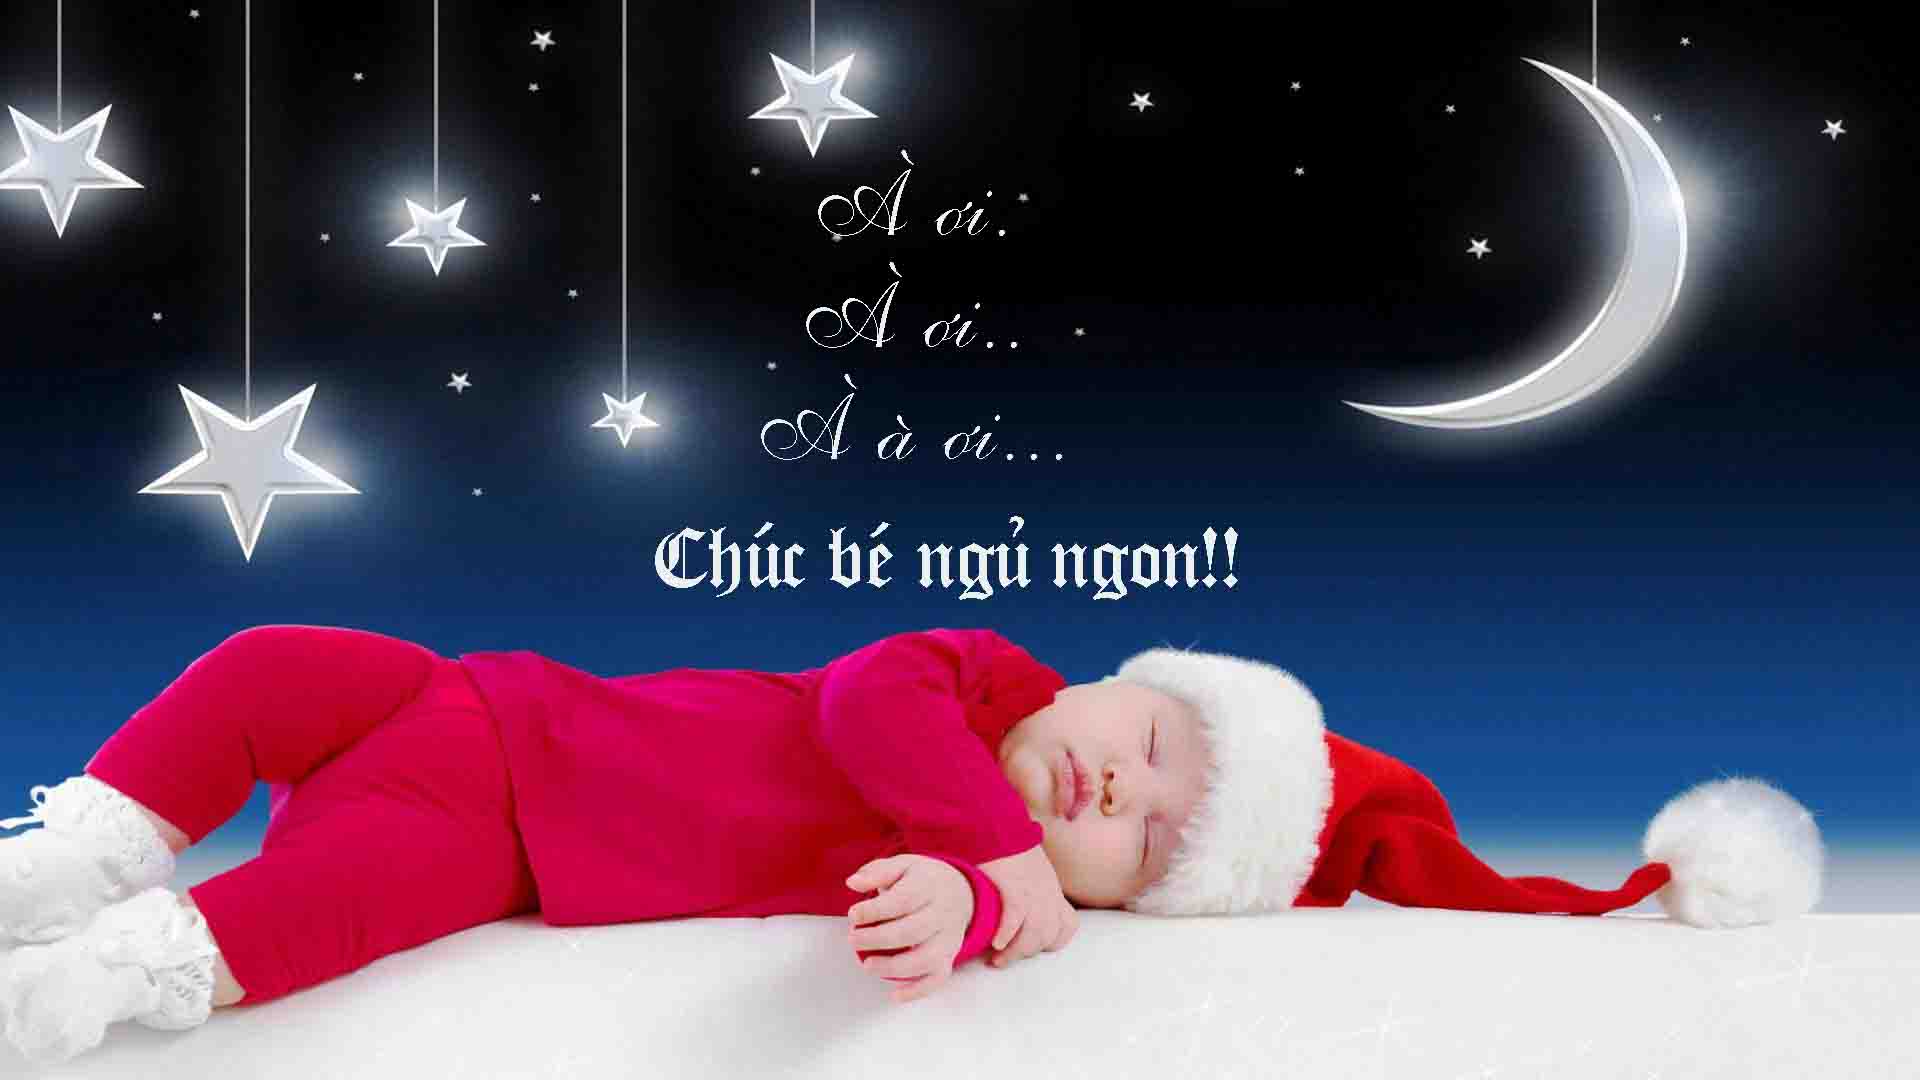 Chúc ngủ ngon hình ảnh trẻ em có những giấc mơ đẹp